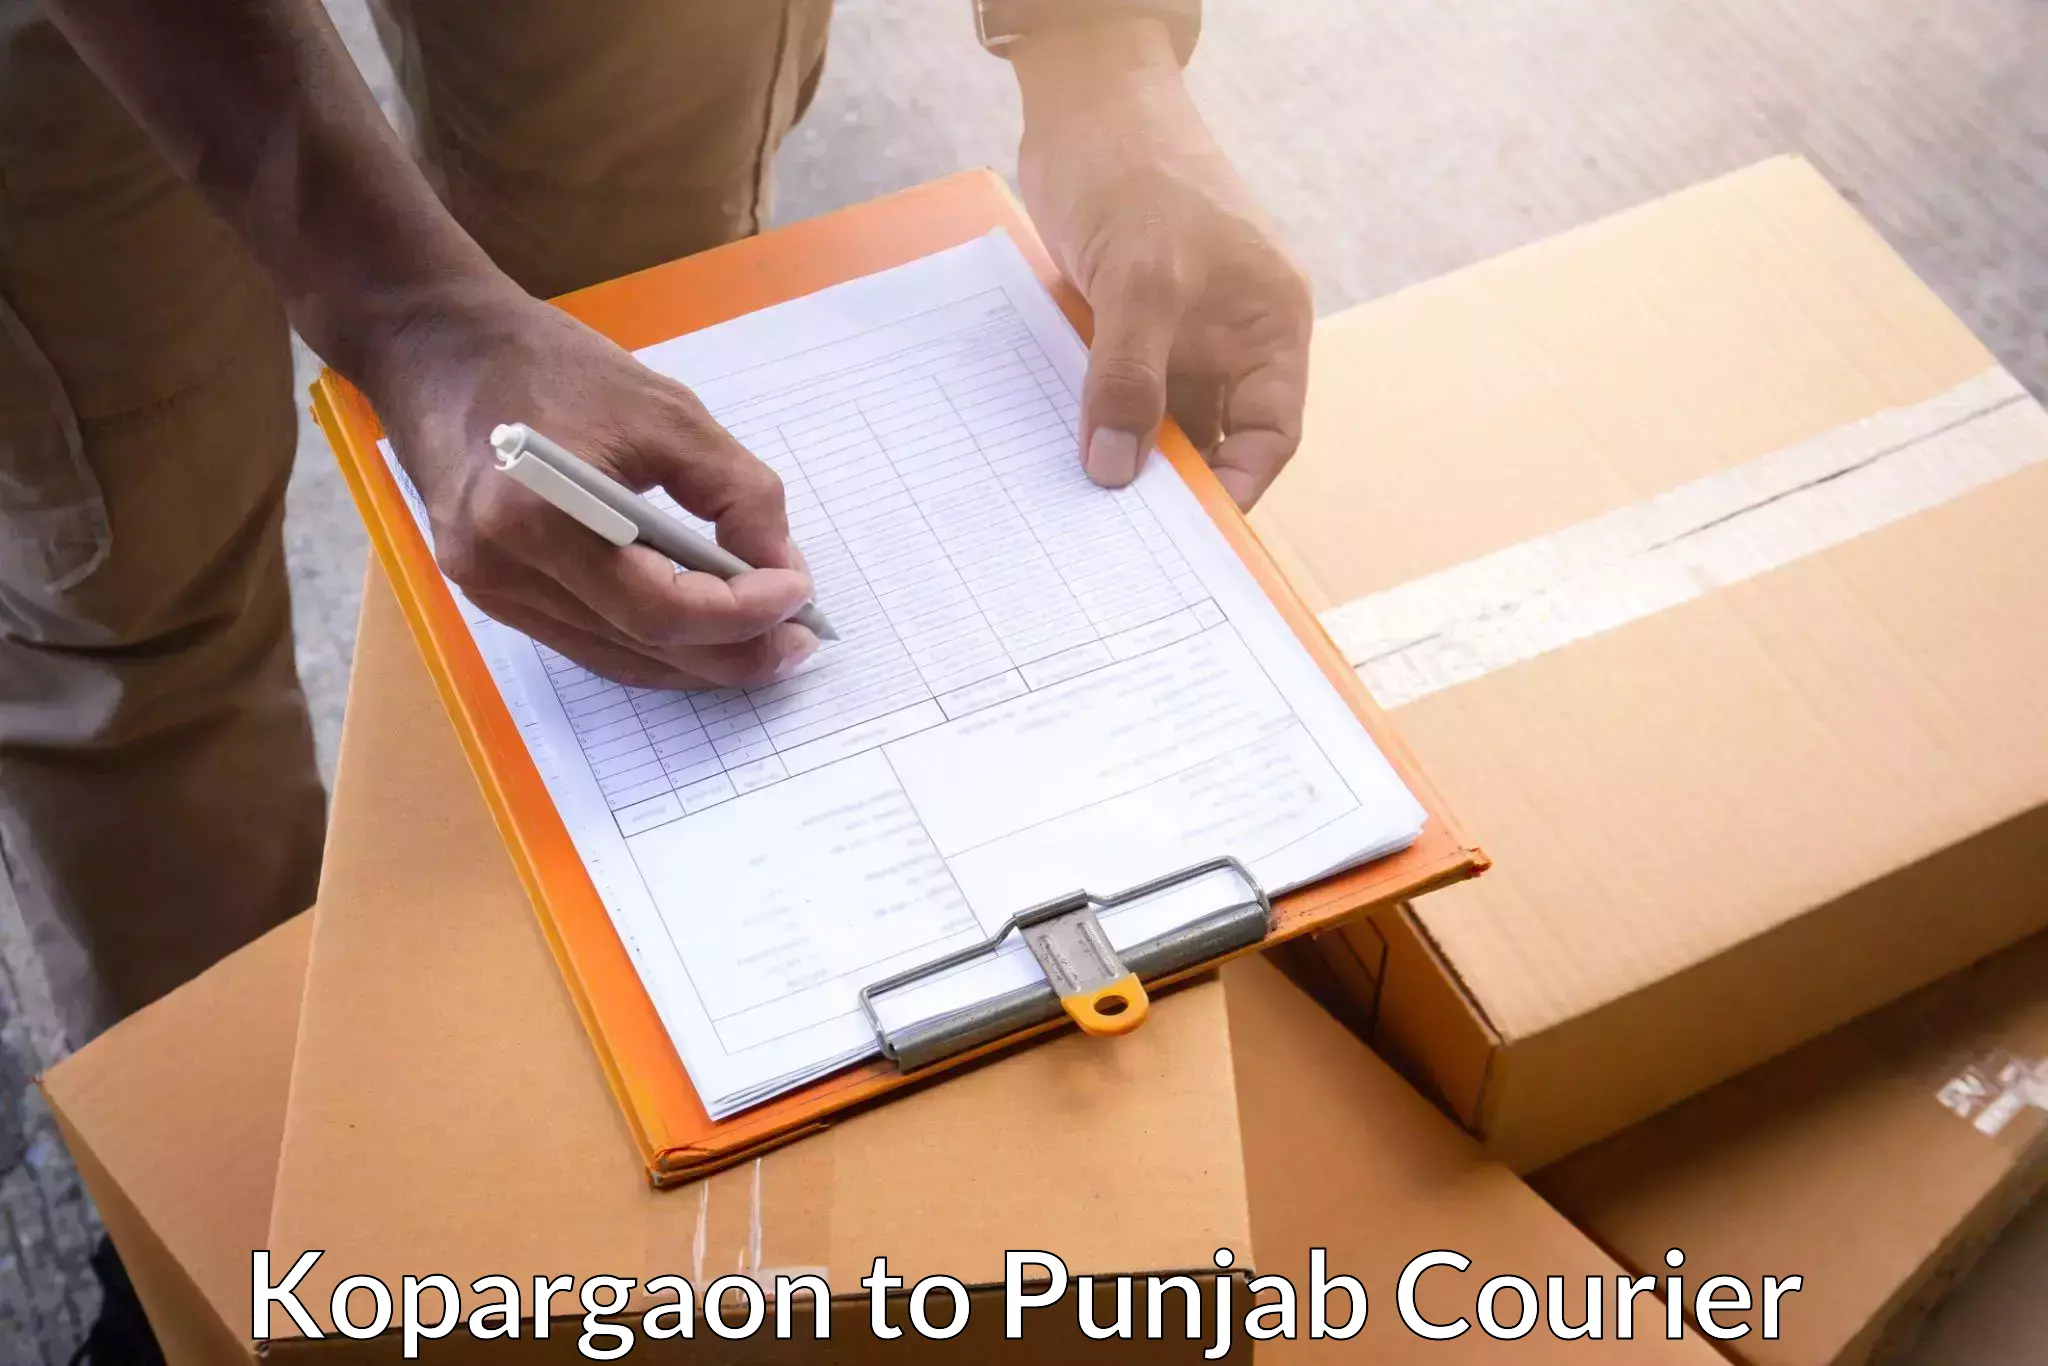 Large package courier Kopargaon to Jalandhar